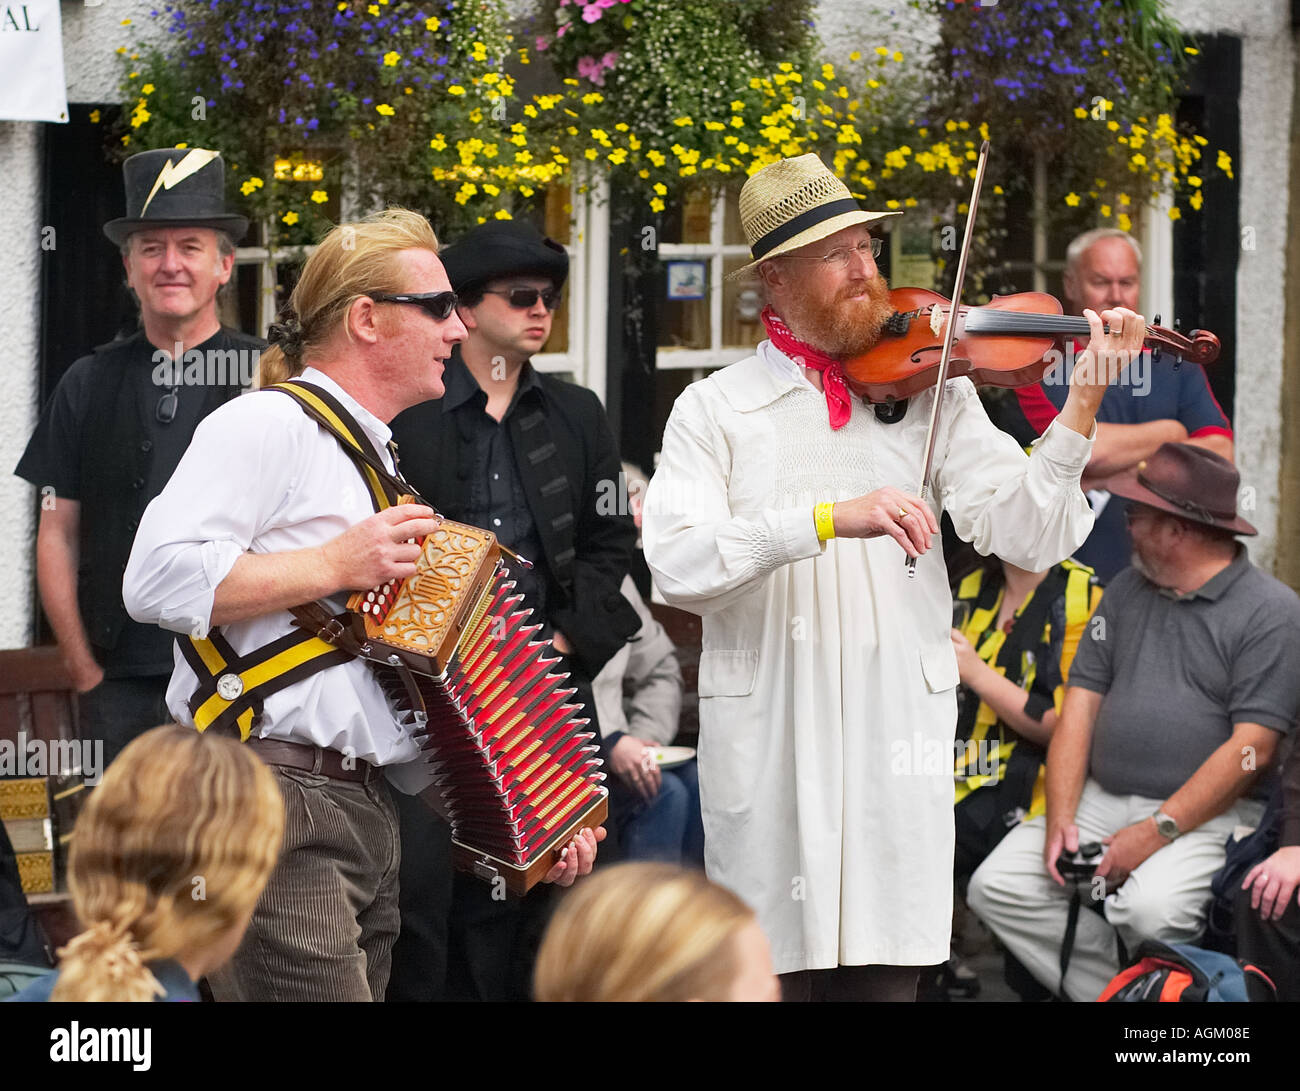 Les musiciens jouent en costume traditionnel pour la Morris Dancers lors d'une fête folklorique dans Yorkshire, Angleterre, Royaume-Uni Banque D'Images